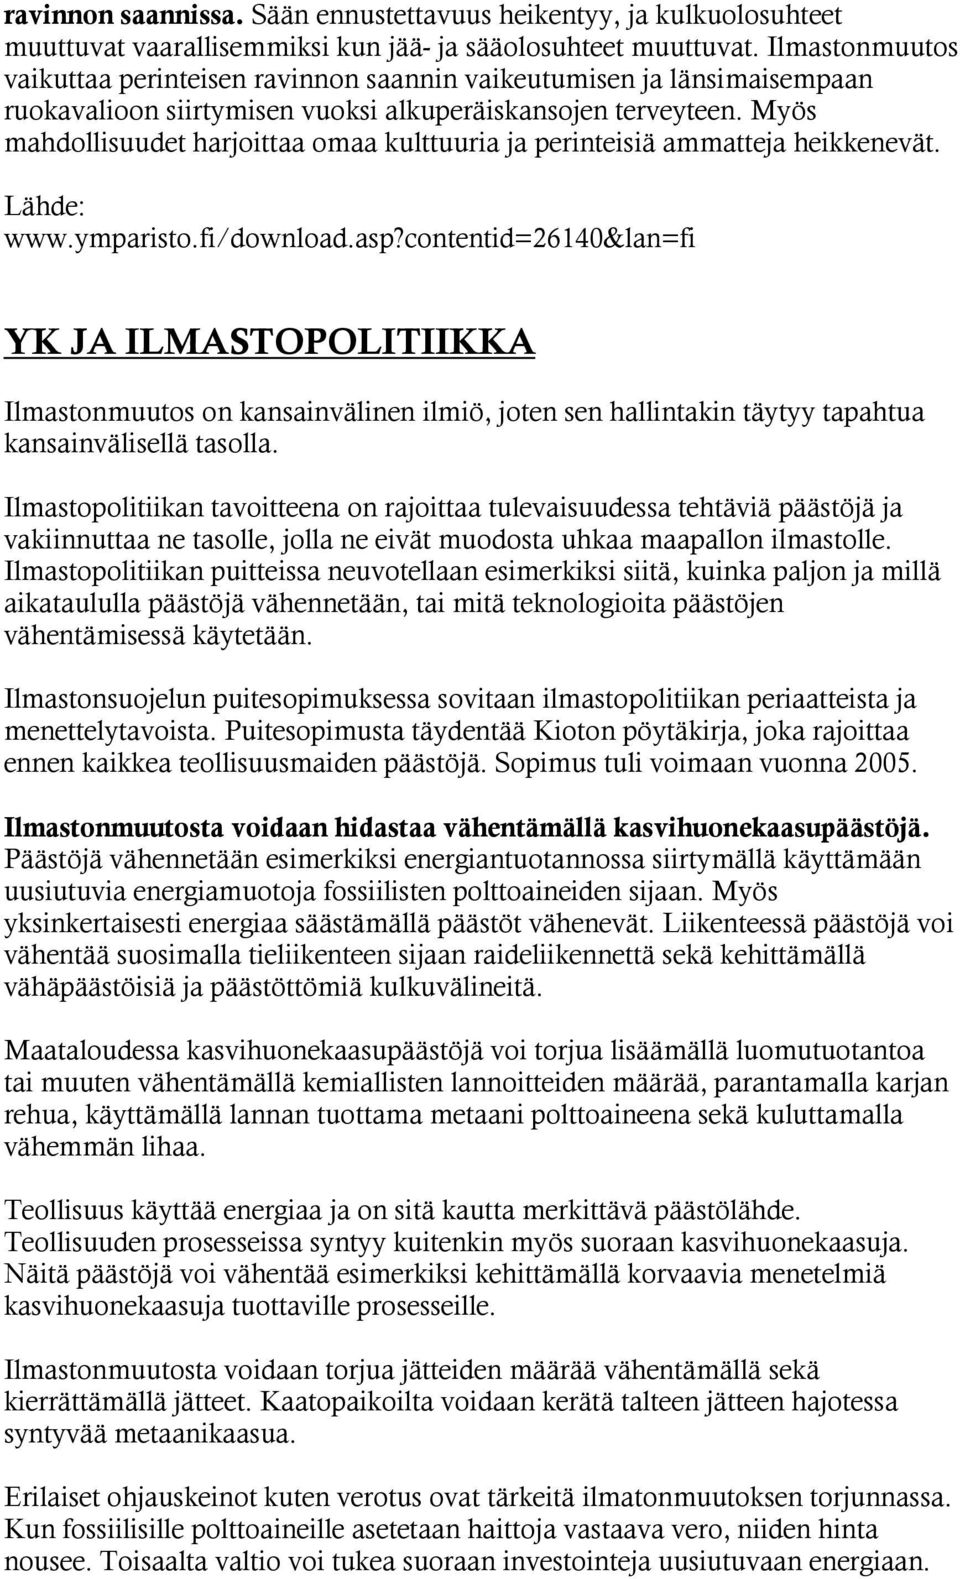 Myös mahdollisuudet harjoittaa omaa kulttuuria ja perinteisiä ammatteja heikkenevät. www.ymparisto.fi/download.asp?